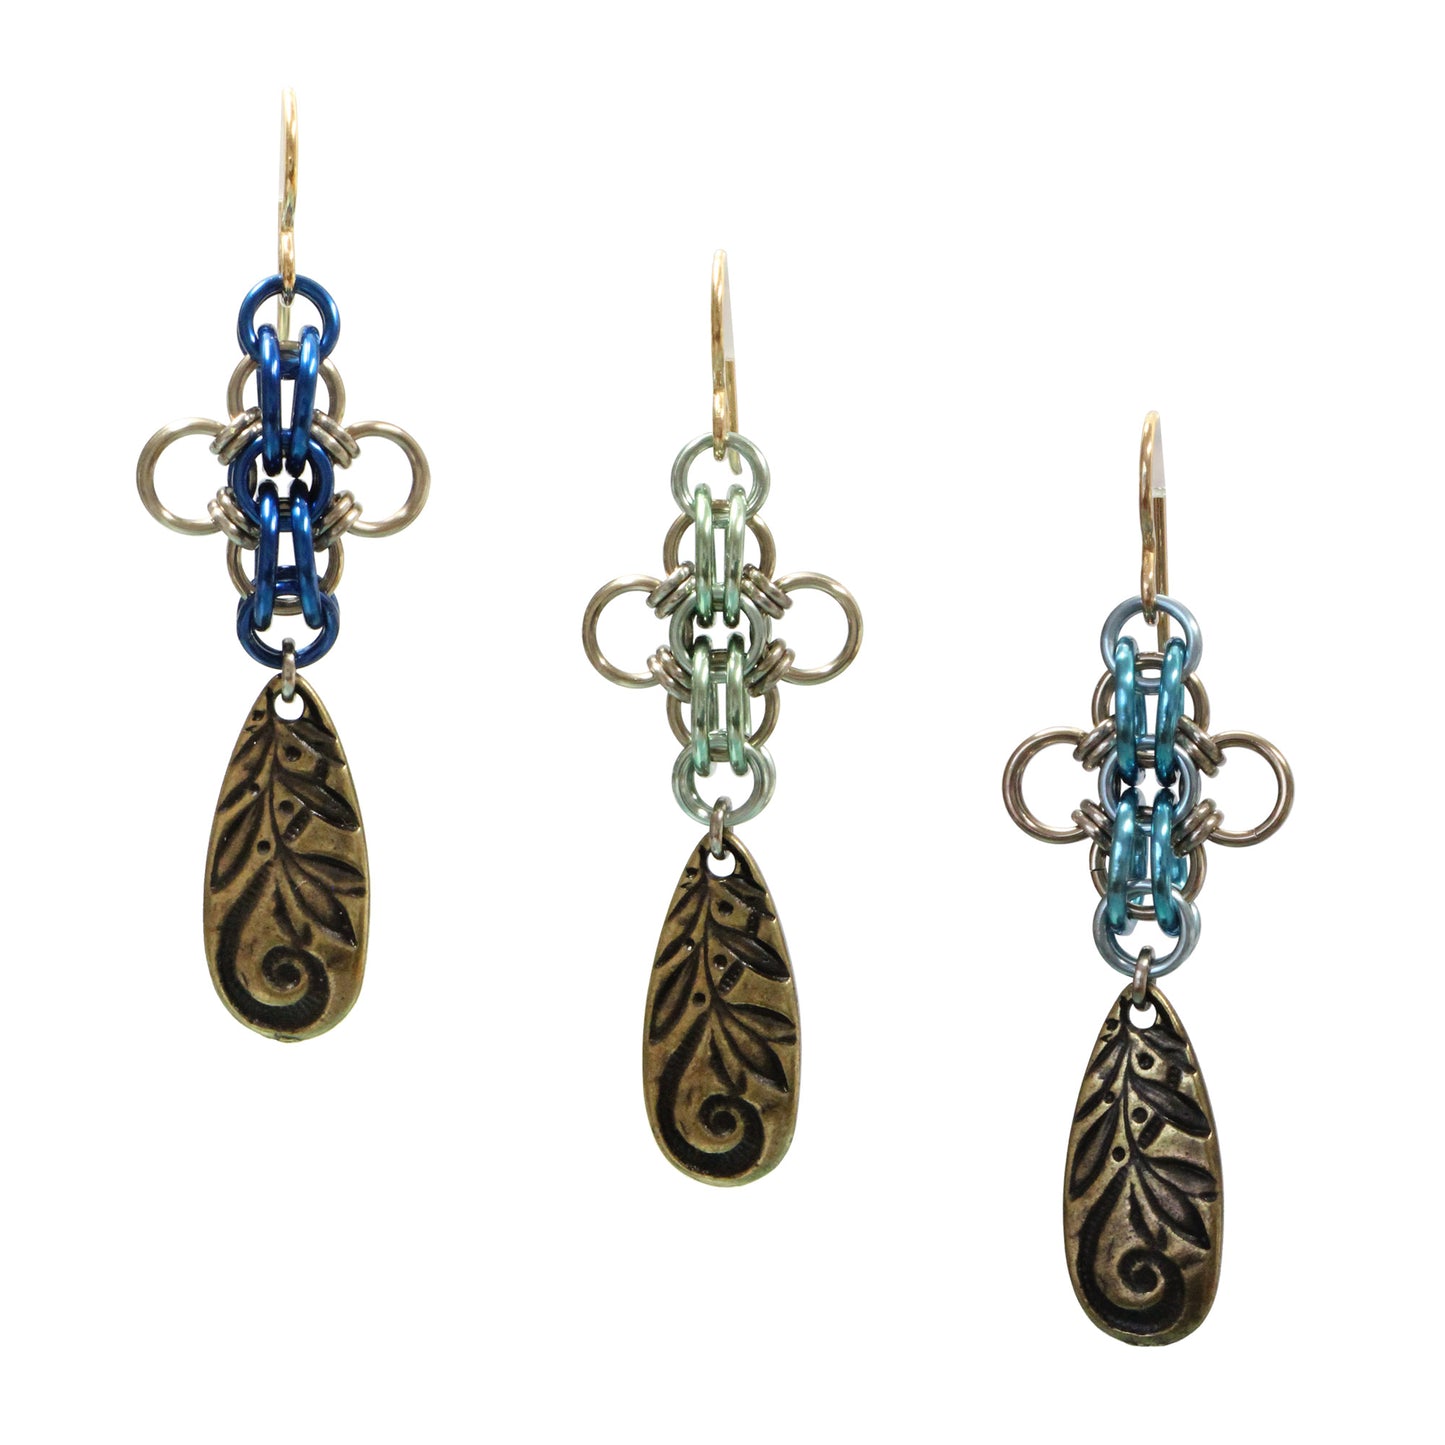 Fiesta en el Jardin Chainmail Earrings / choose from 3 color options / 58mm length / gold filled hook earwires